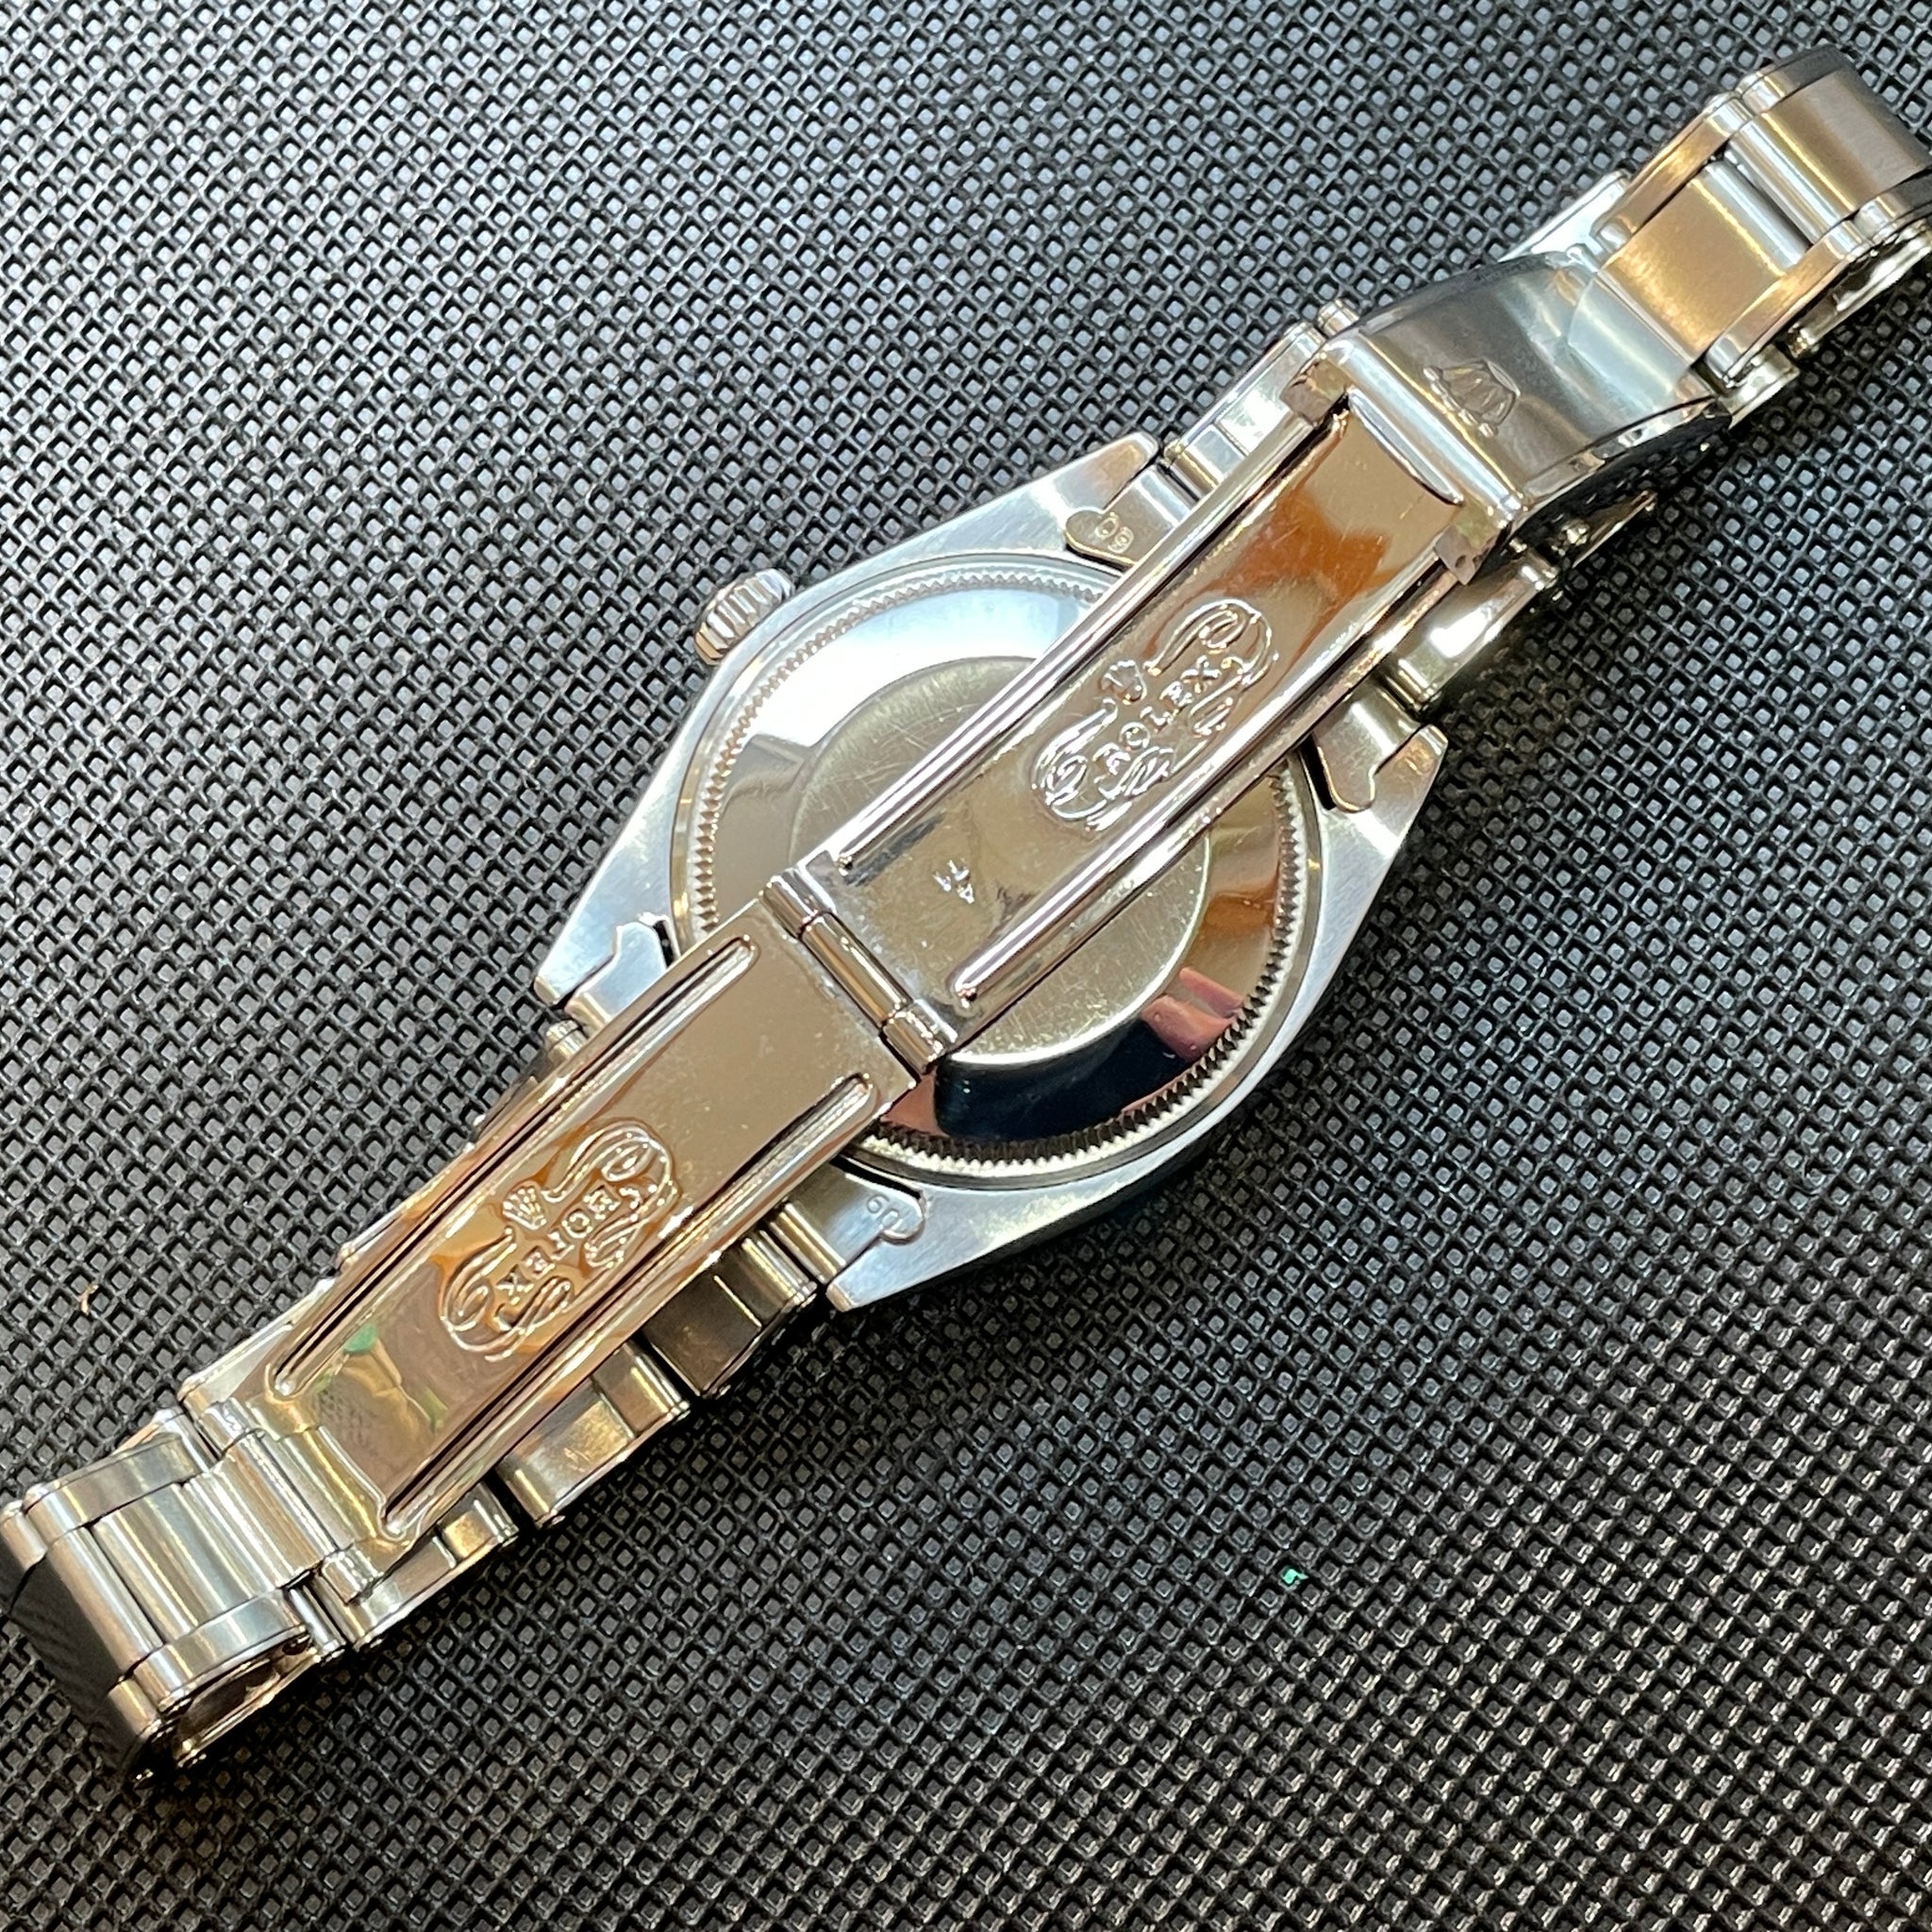 Rolex ロレックス オイスターパーペチュアル エアキング デイト Ref.5700 自動巻 62年製